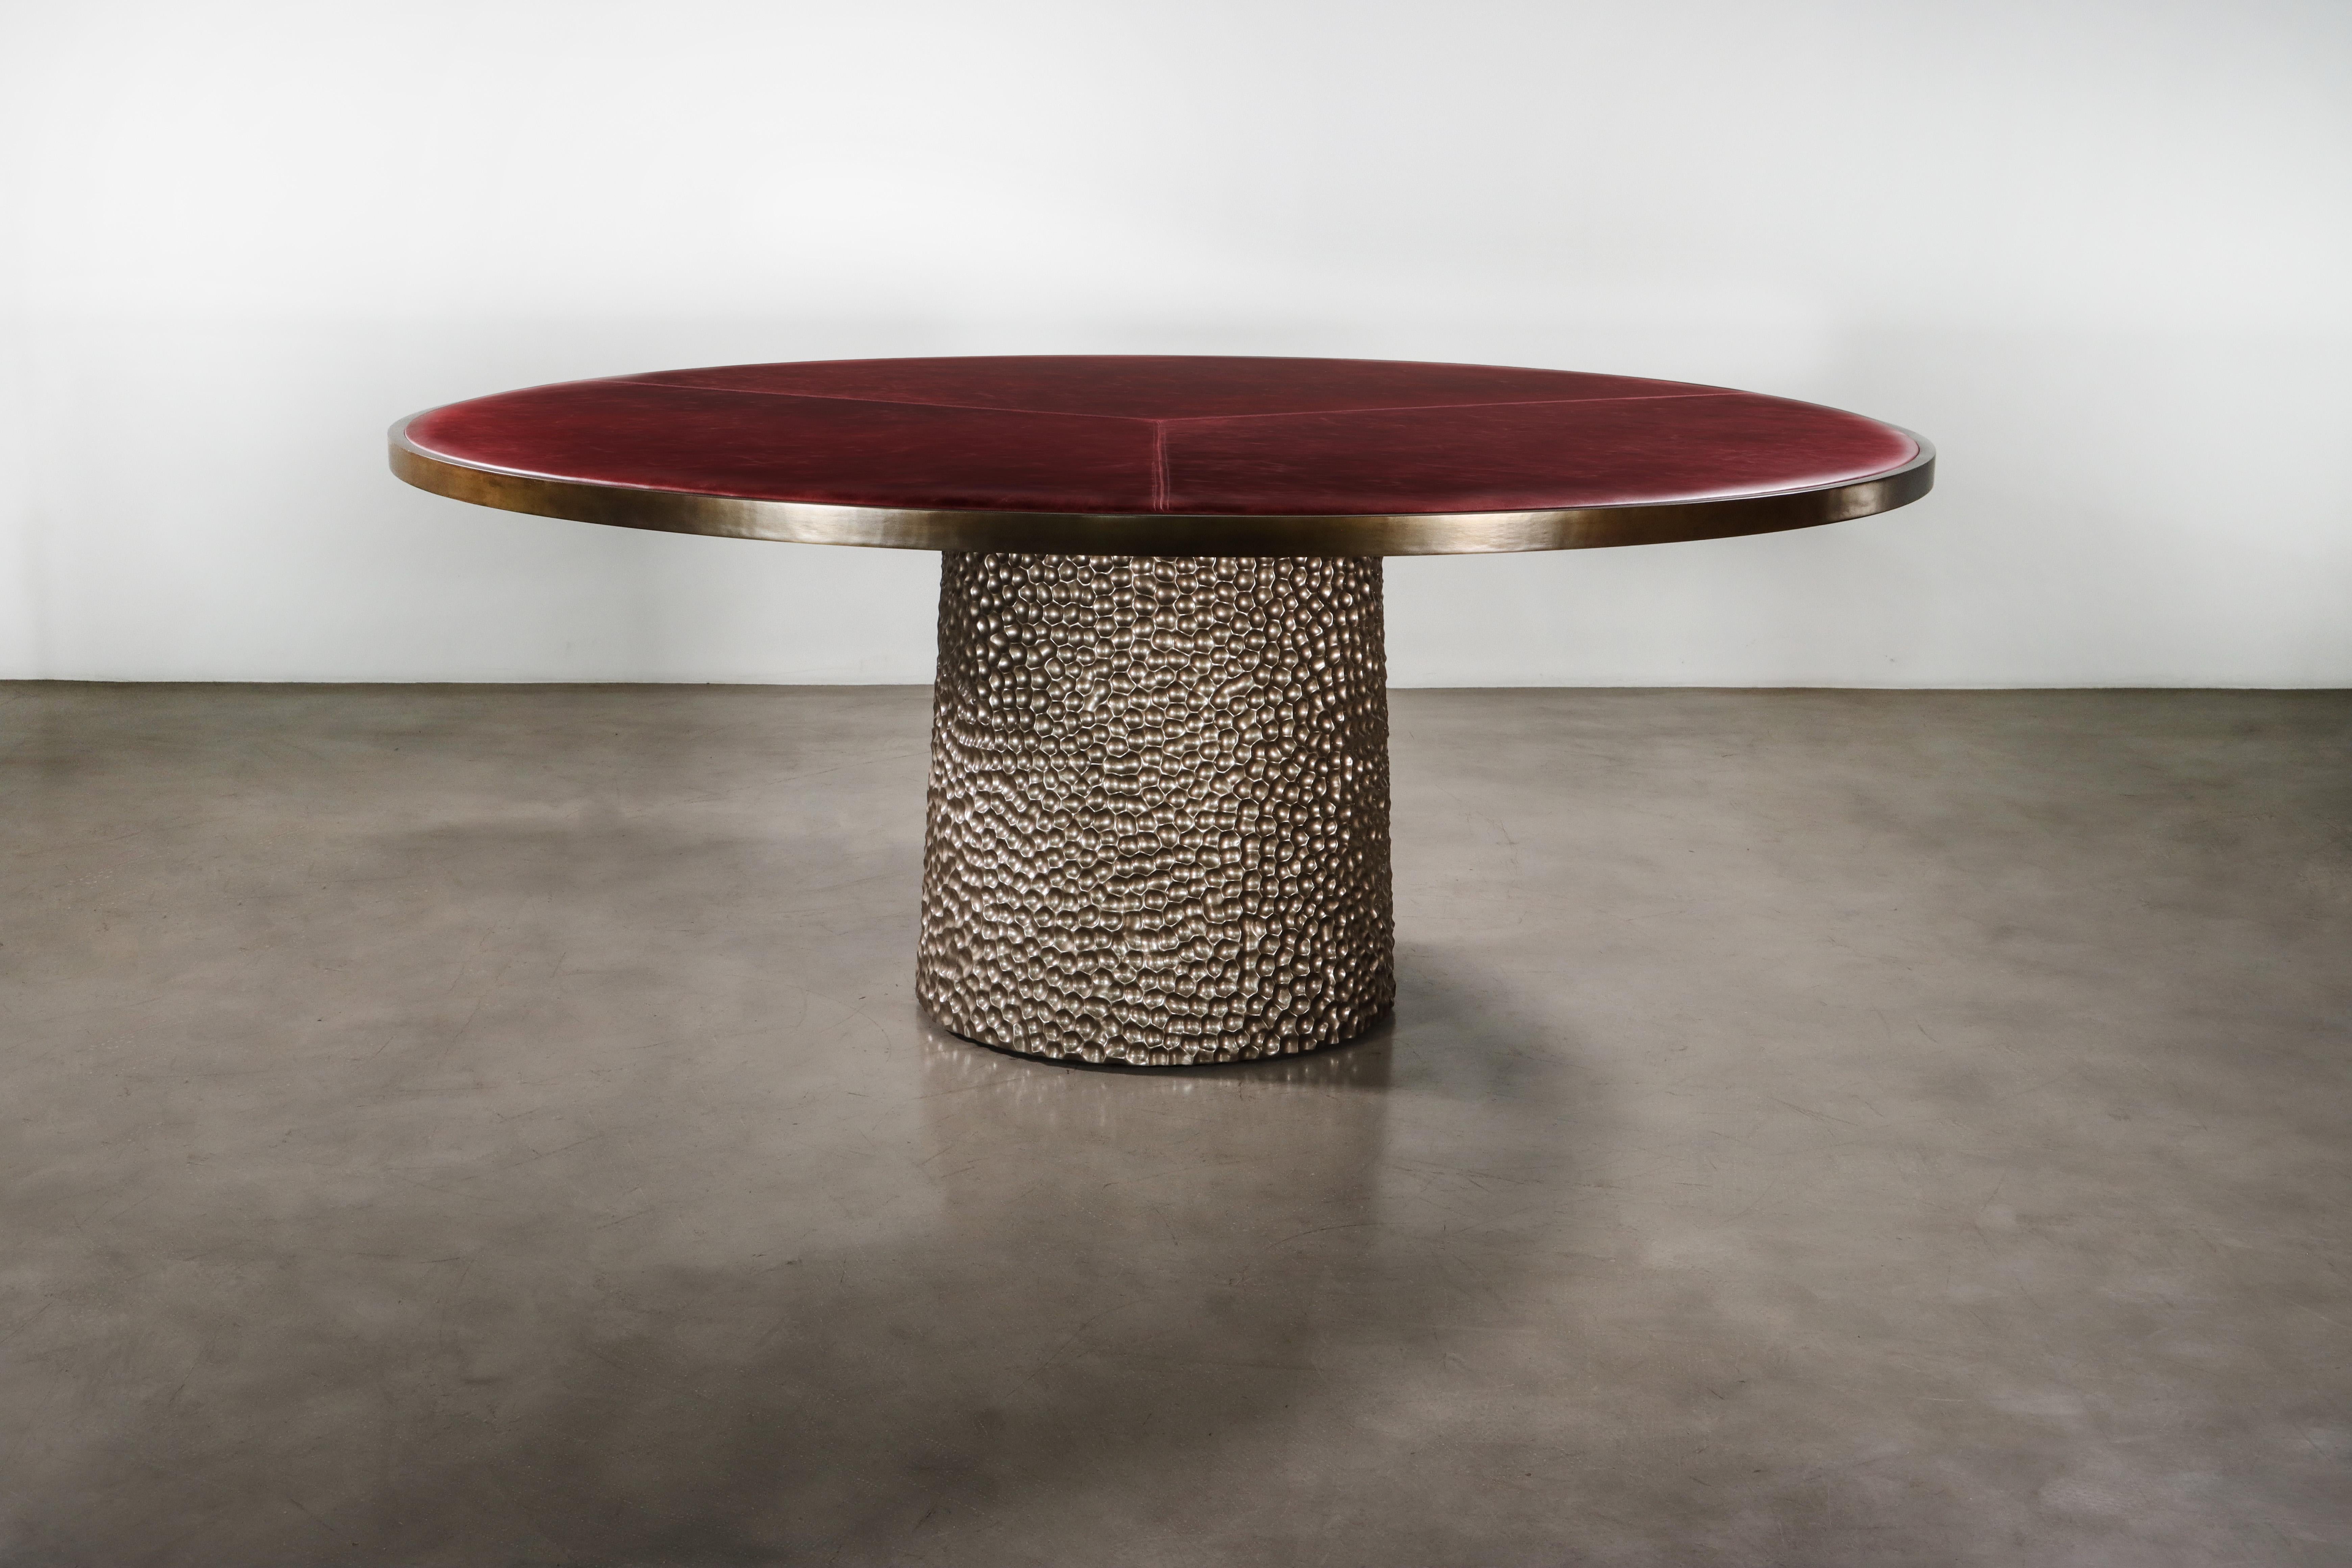 La table Giada est dotée d'un plateau rembourré dans le tissu ou le cuir de votre choix, d'une élégante garniture en bronze et d'une base en bois sculptée à la main, présentée ici dans une finition métallique.  

Les dimensions sont de 72